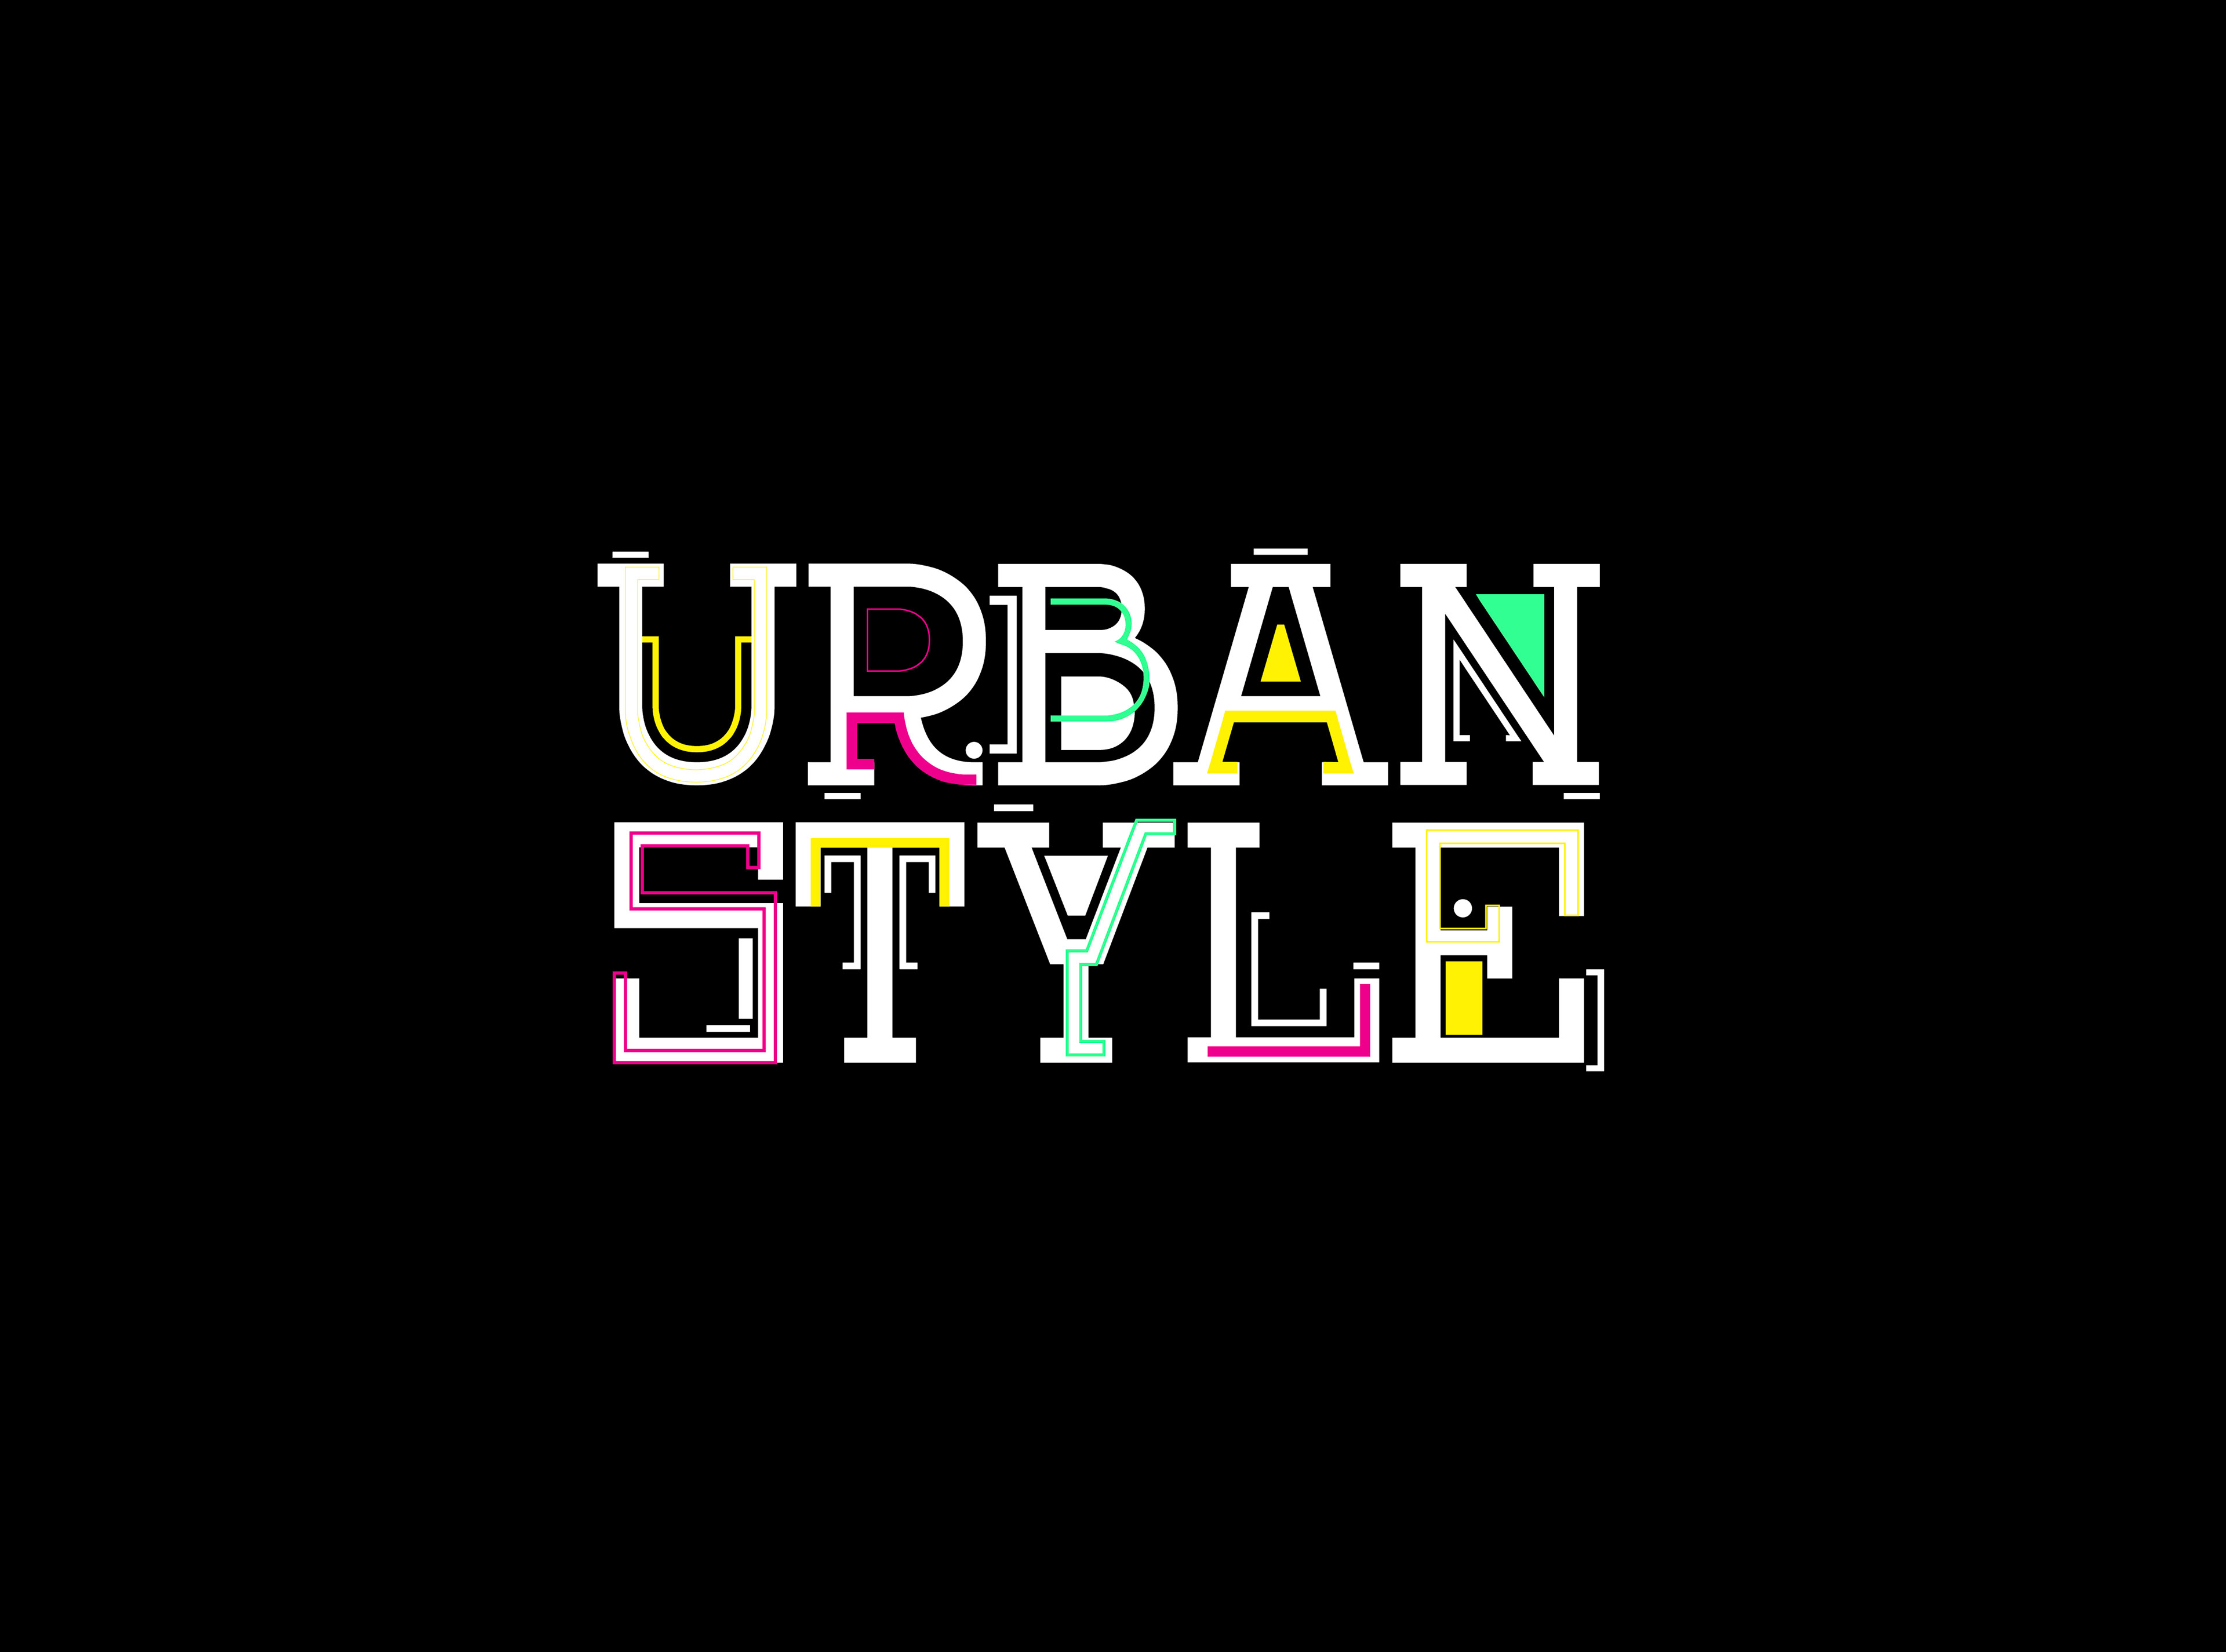 urban style logos